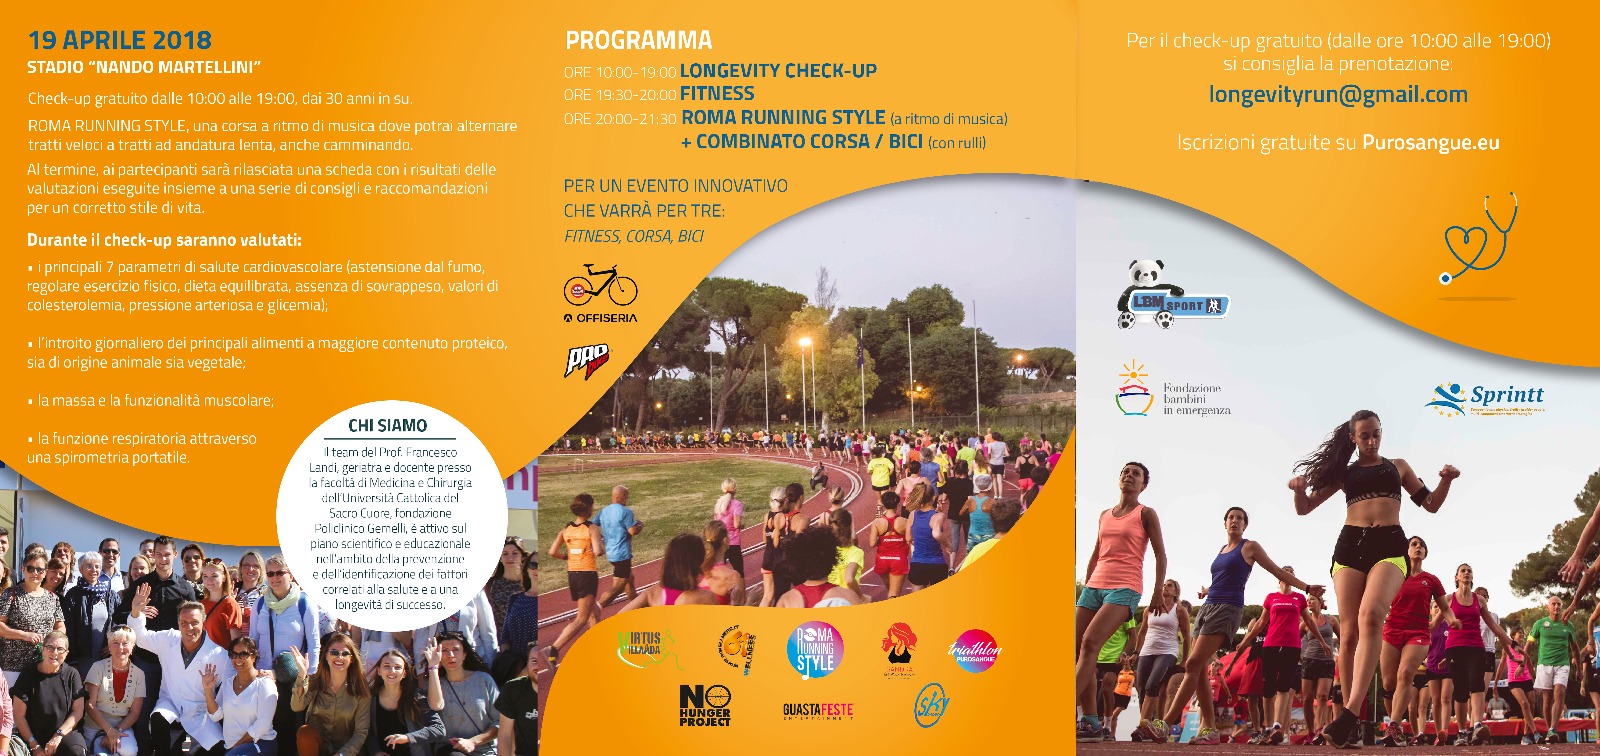 Roma, Longevity run, l’iniziativa dedicata allo sport e alla prevenzione